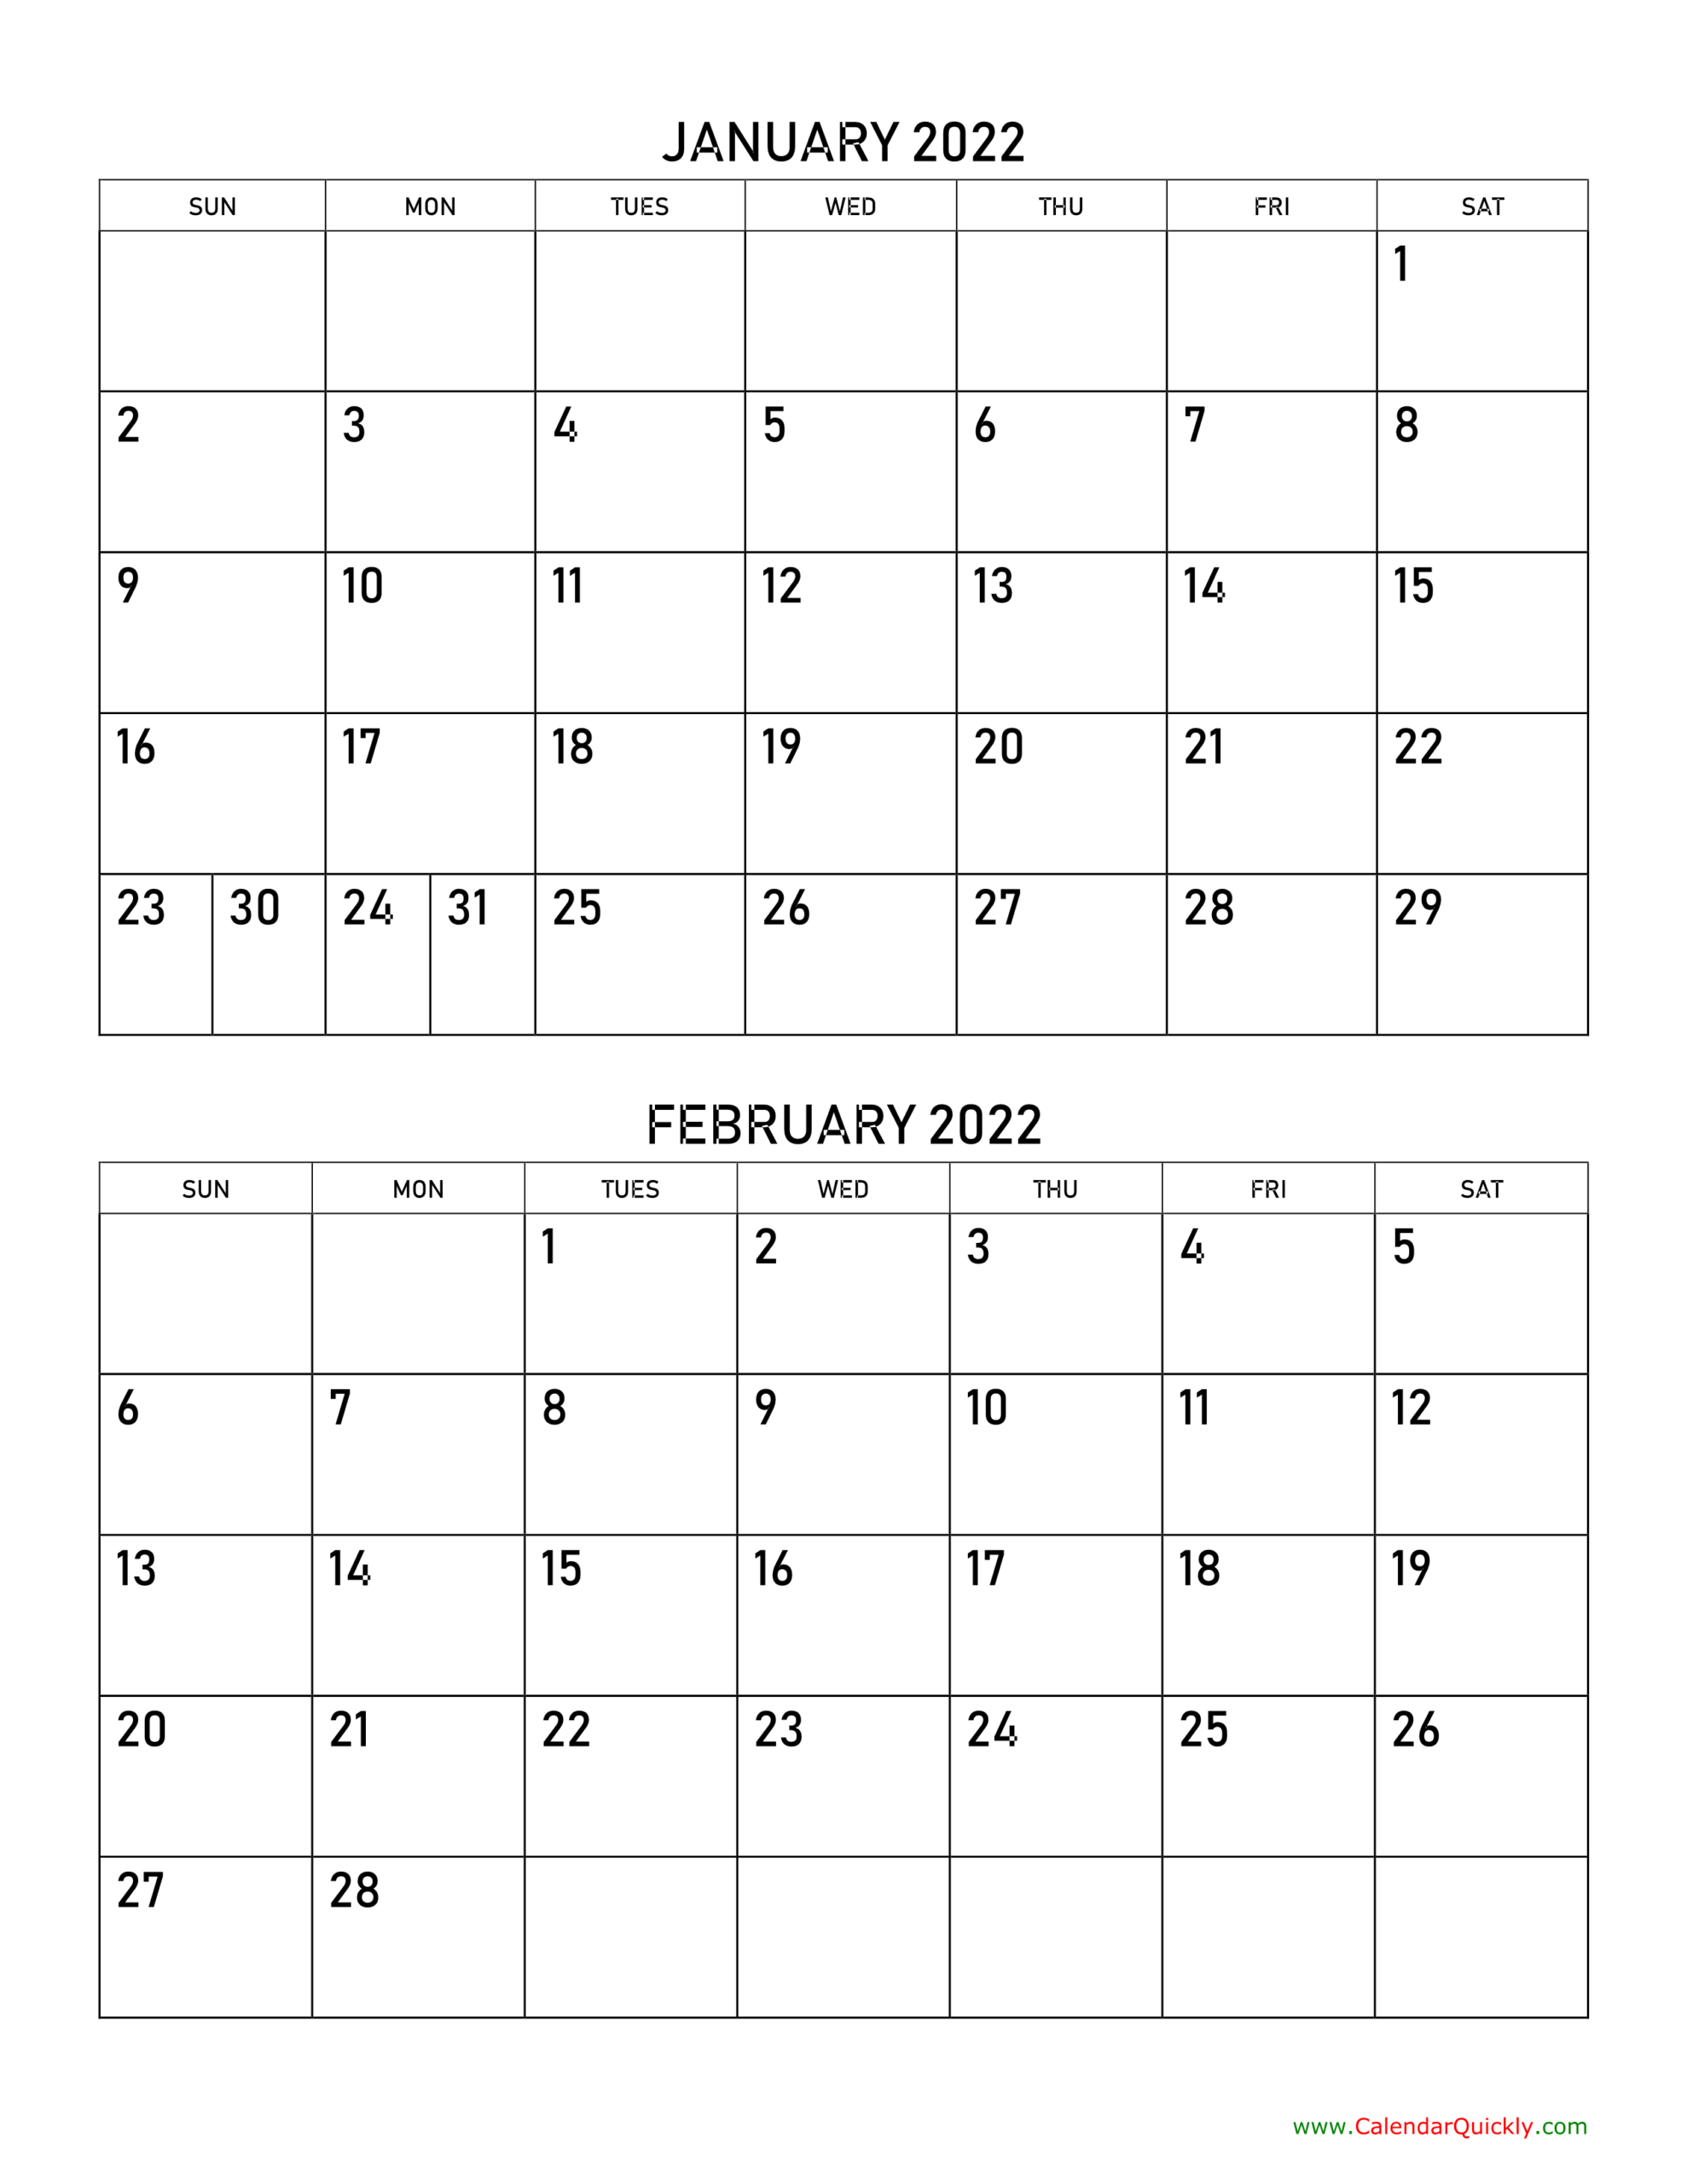 January And February 2022 Calendar | Calendar Quickly